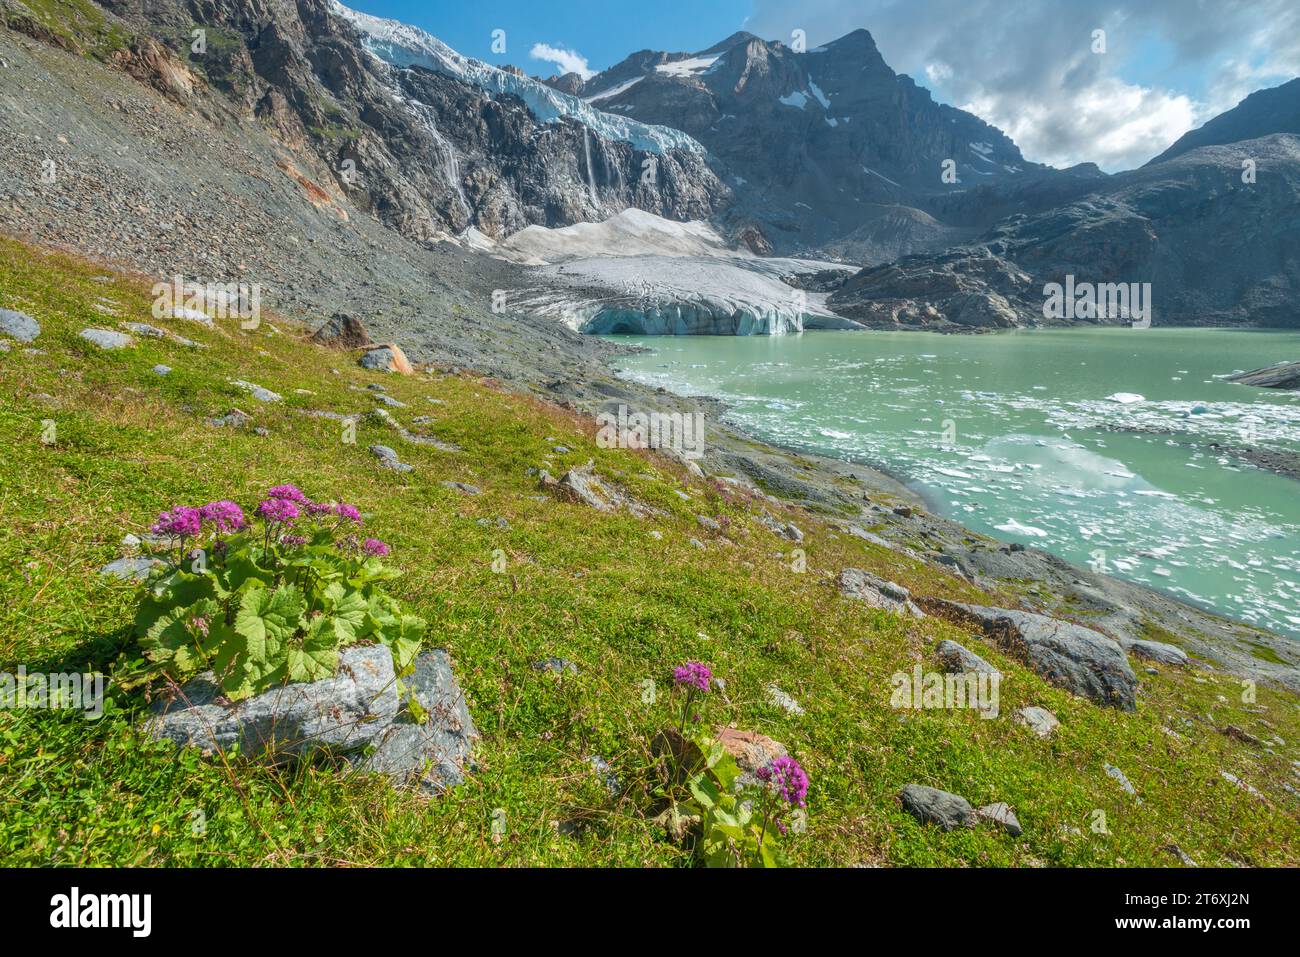 Glaciar alpino en retroceso, glaciar circo con cascada que se rompe en el lago glacial, rodeado de prado verde alfombrado con flores silvestres de verano Foto de stock